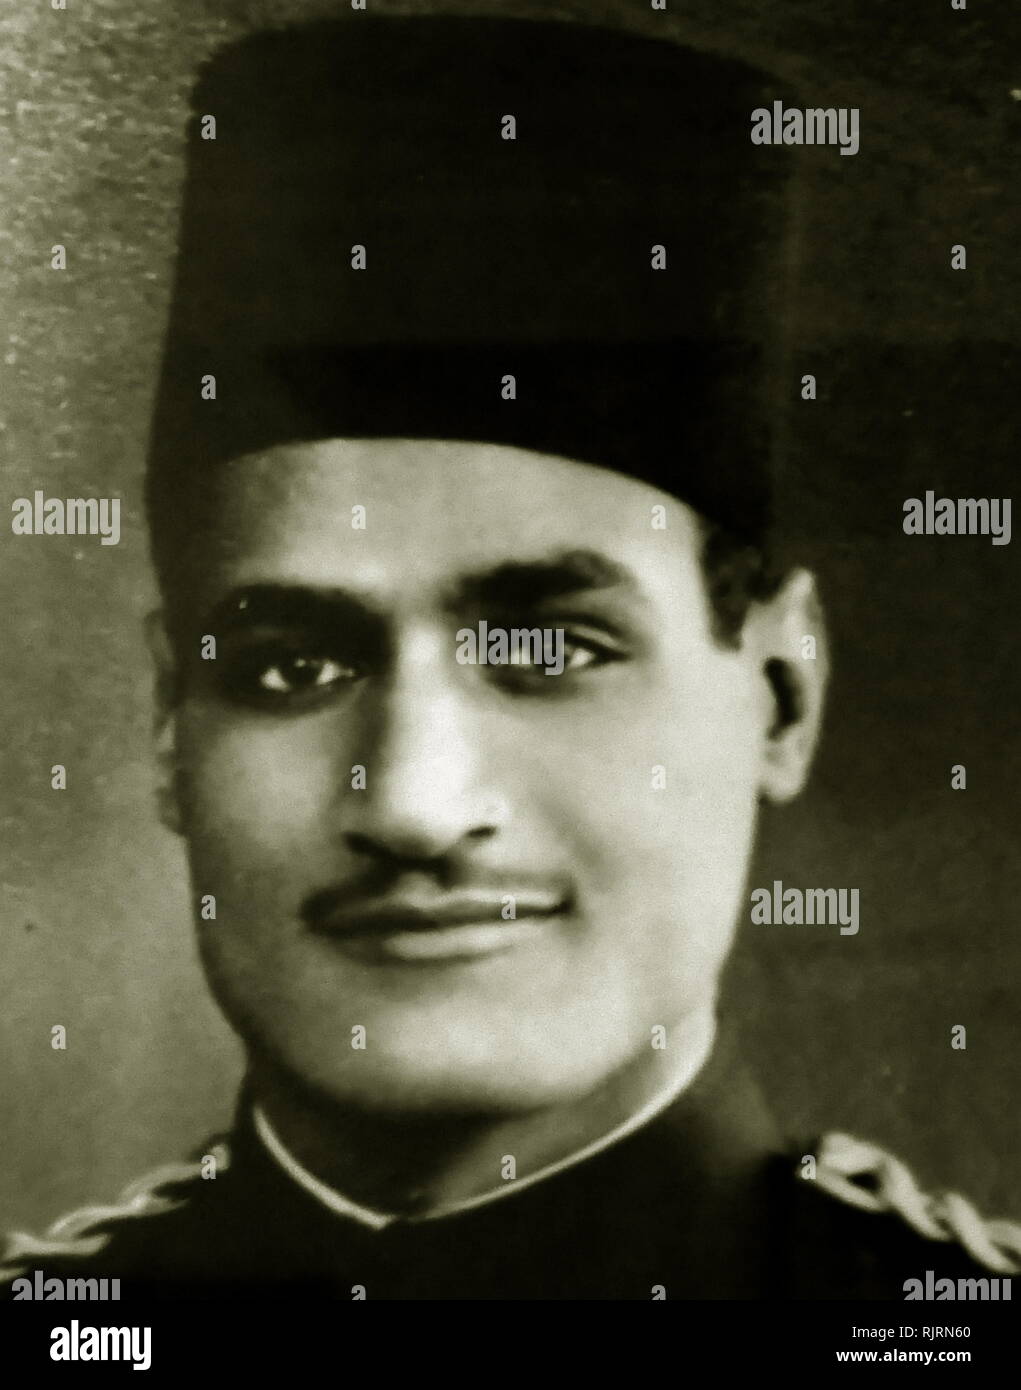 Gamal Abdel Nasser, comme un jeune officier vers 1940. Nasser a été président de l'Égypte, à partir de 1956 jusqu'à sa mort en 1970. Nasser a dirigé le renversement de la monarchie en 1952 et a introduit des réformes foncières l'année suivante Banque D'Images